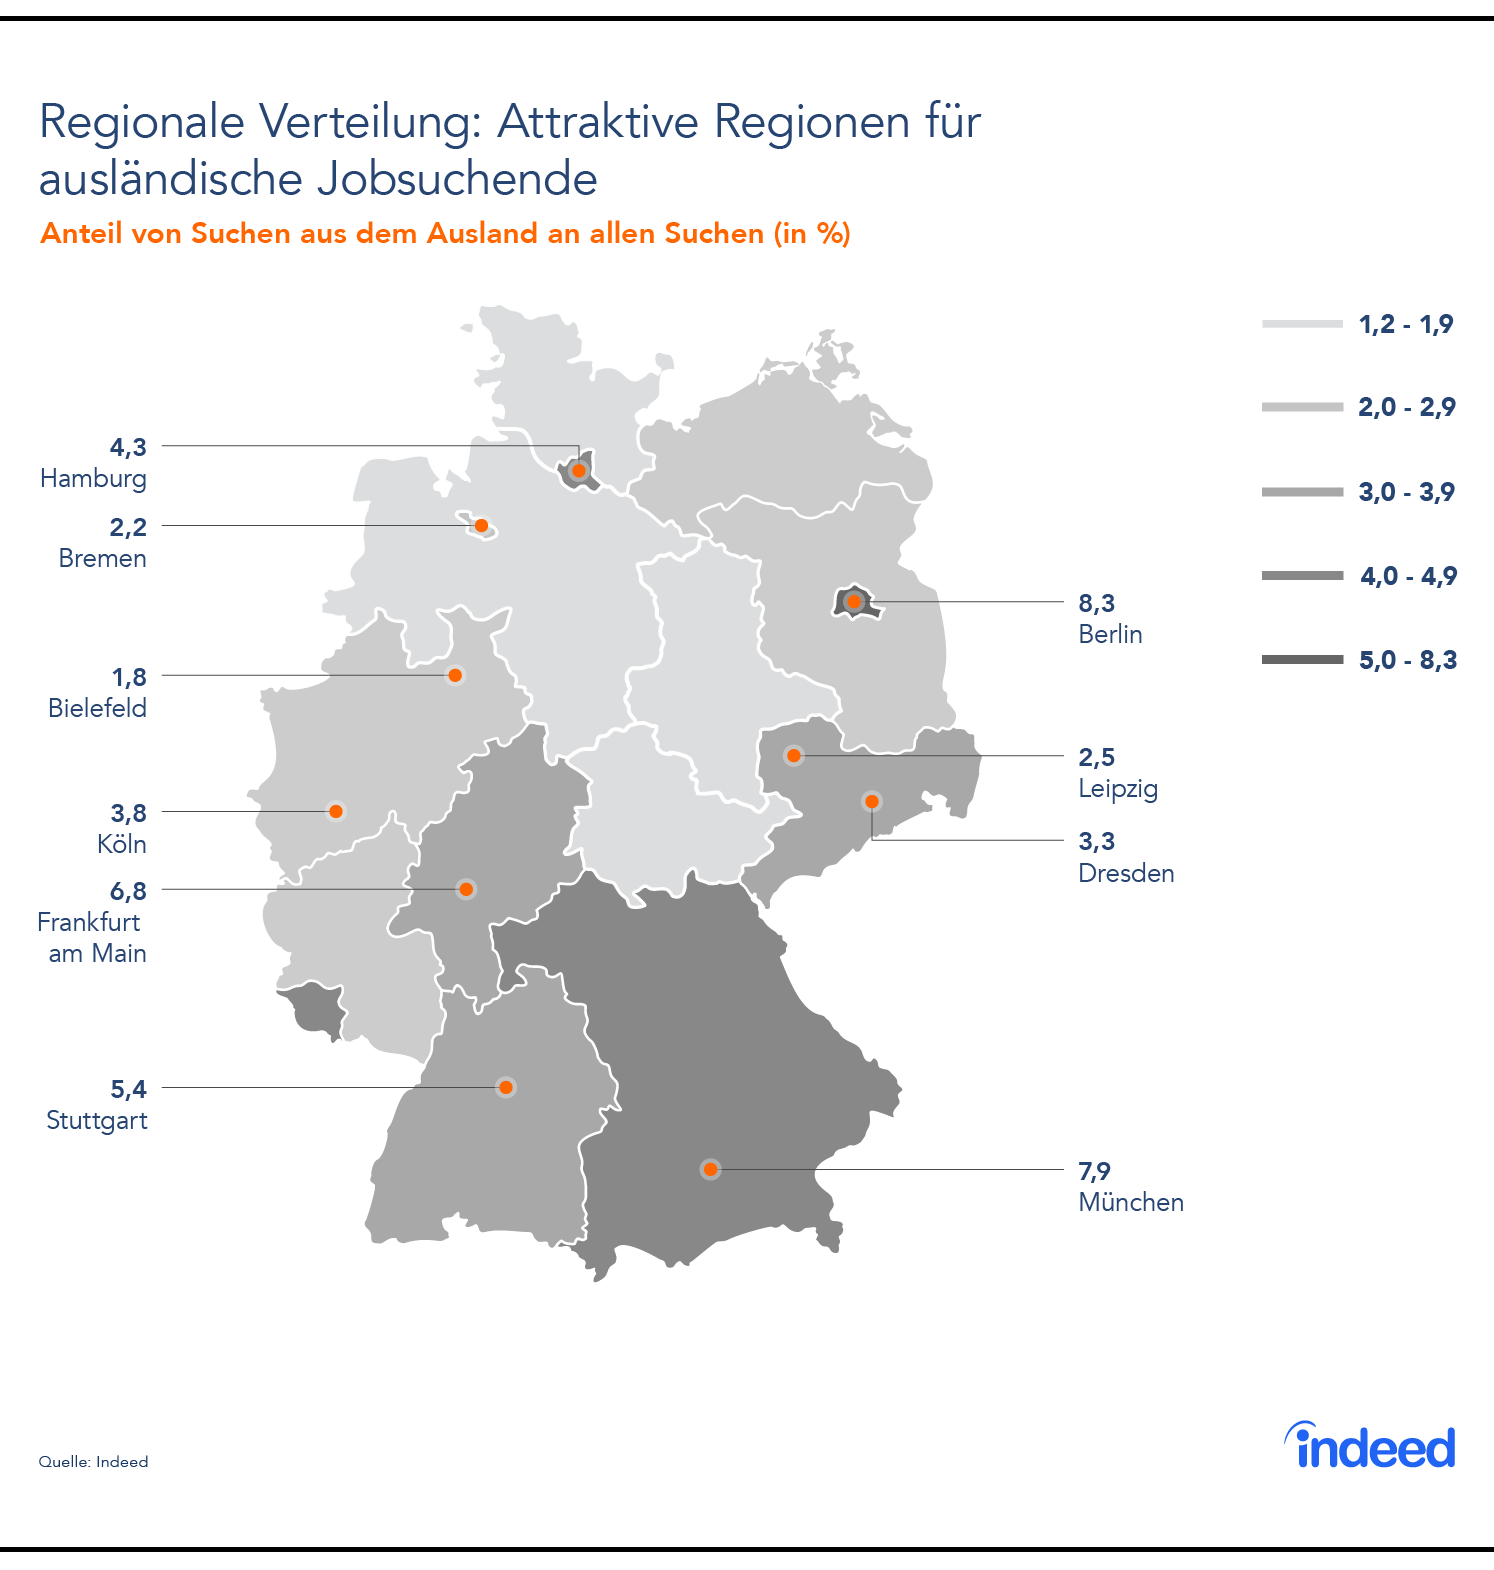 Attraktive Regionen in Deutschland für die ausländische Jobsuche